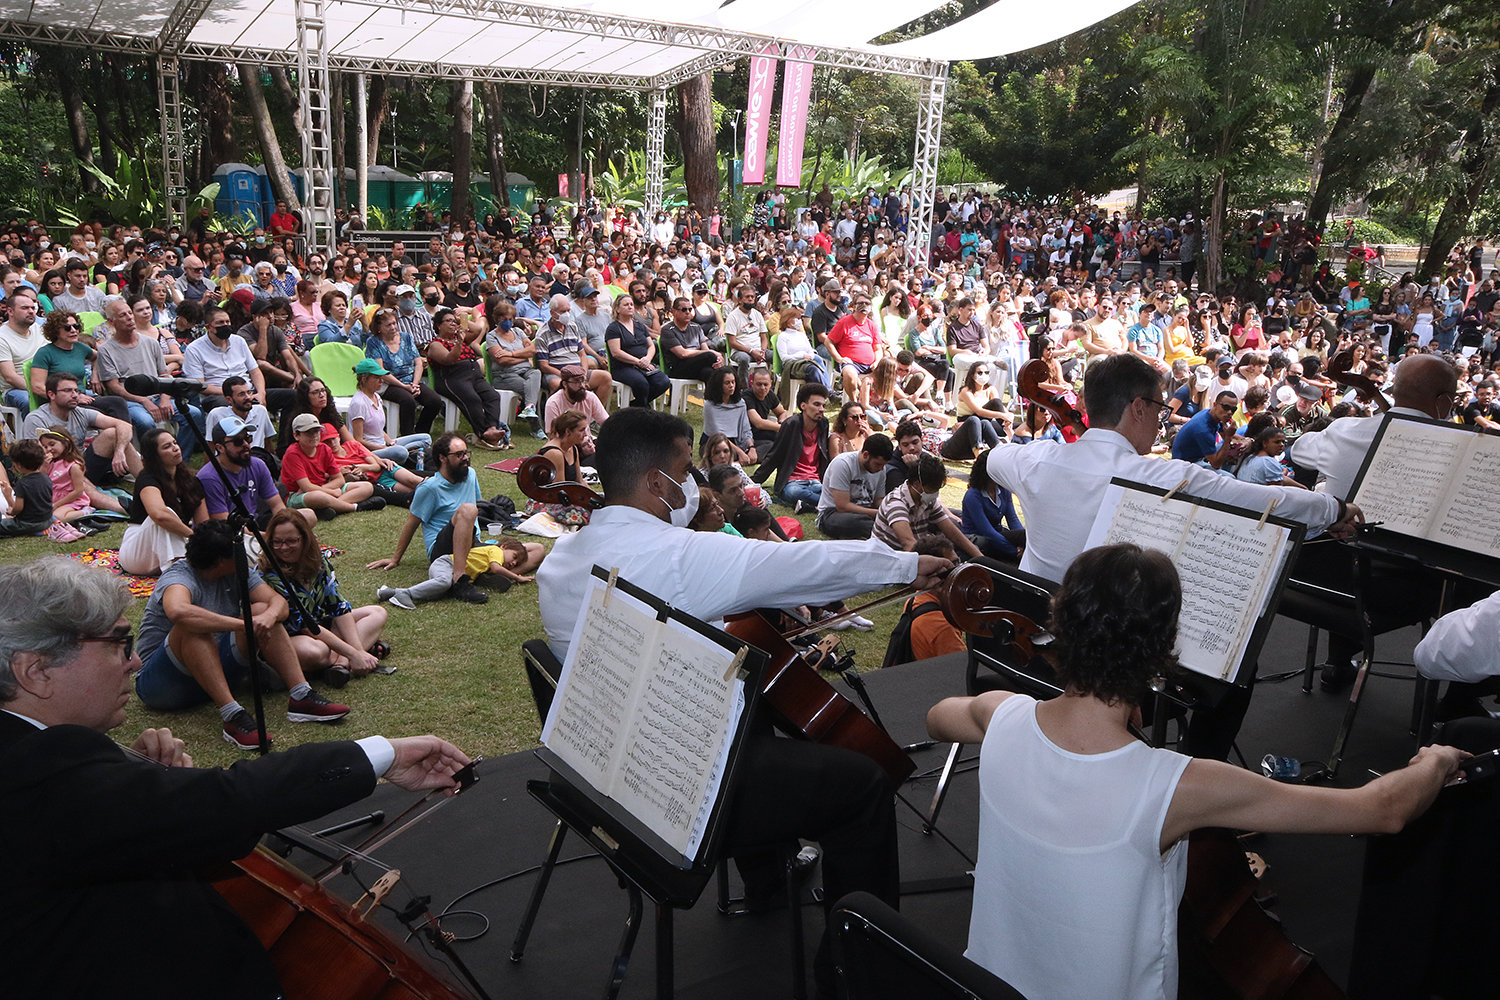 Volks Festival em Belo Horizonte, MG - Maxicar